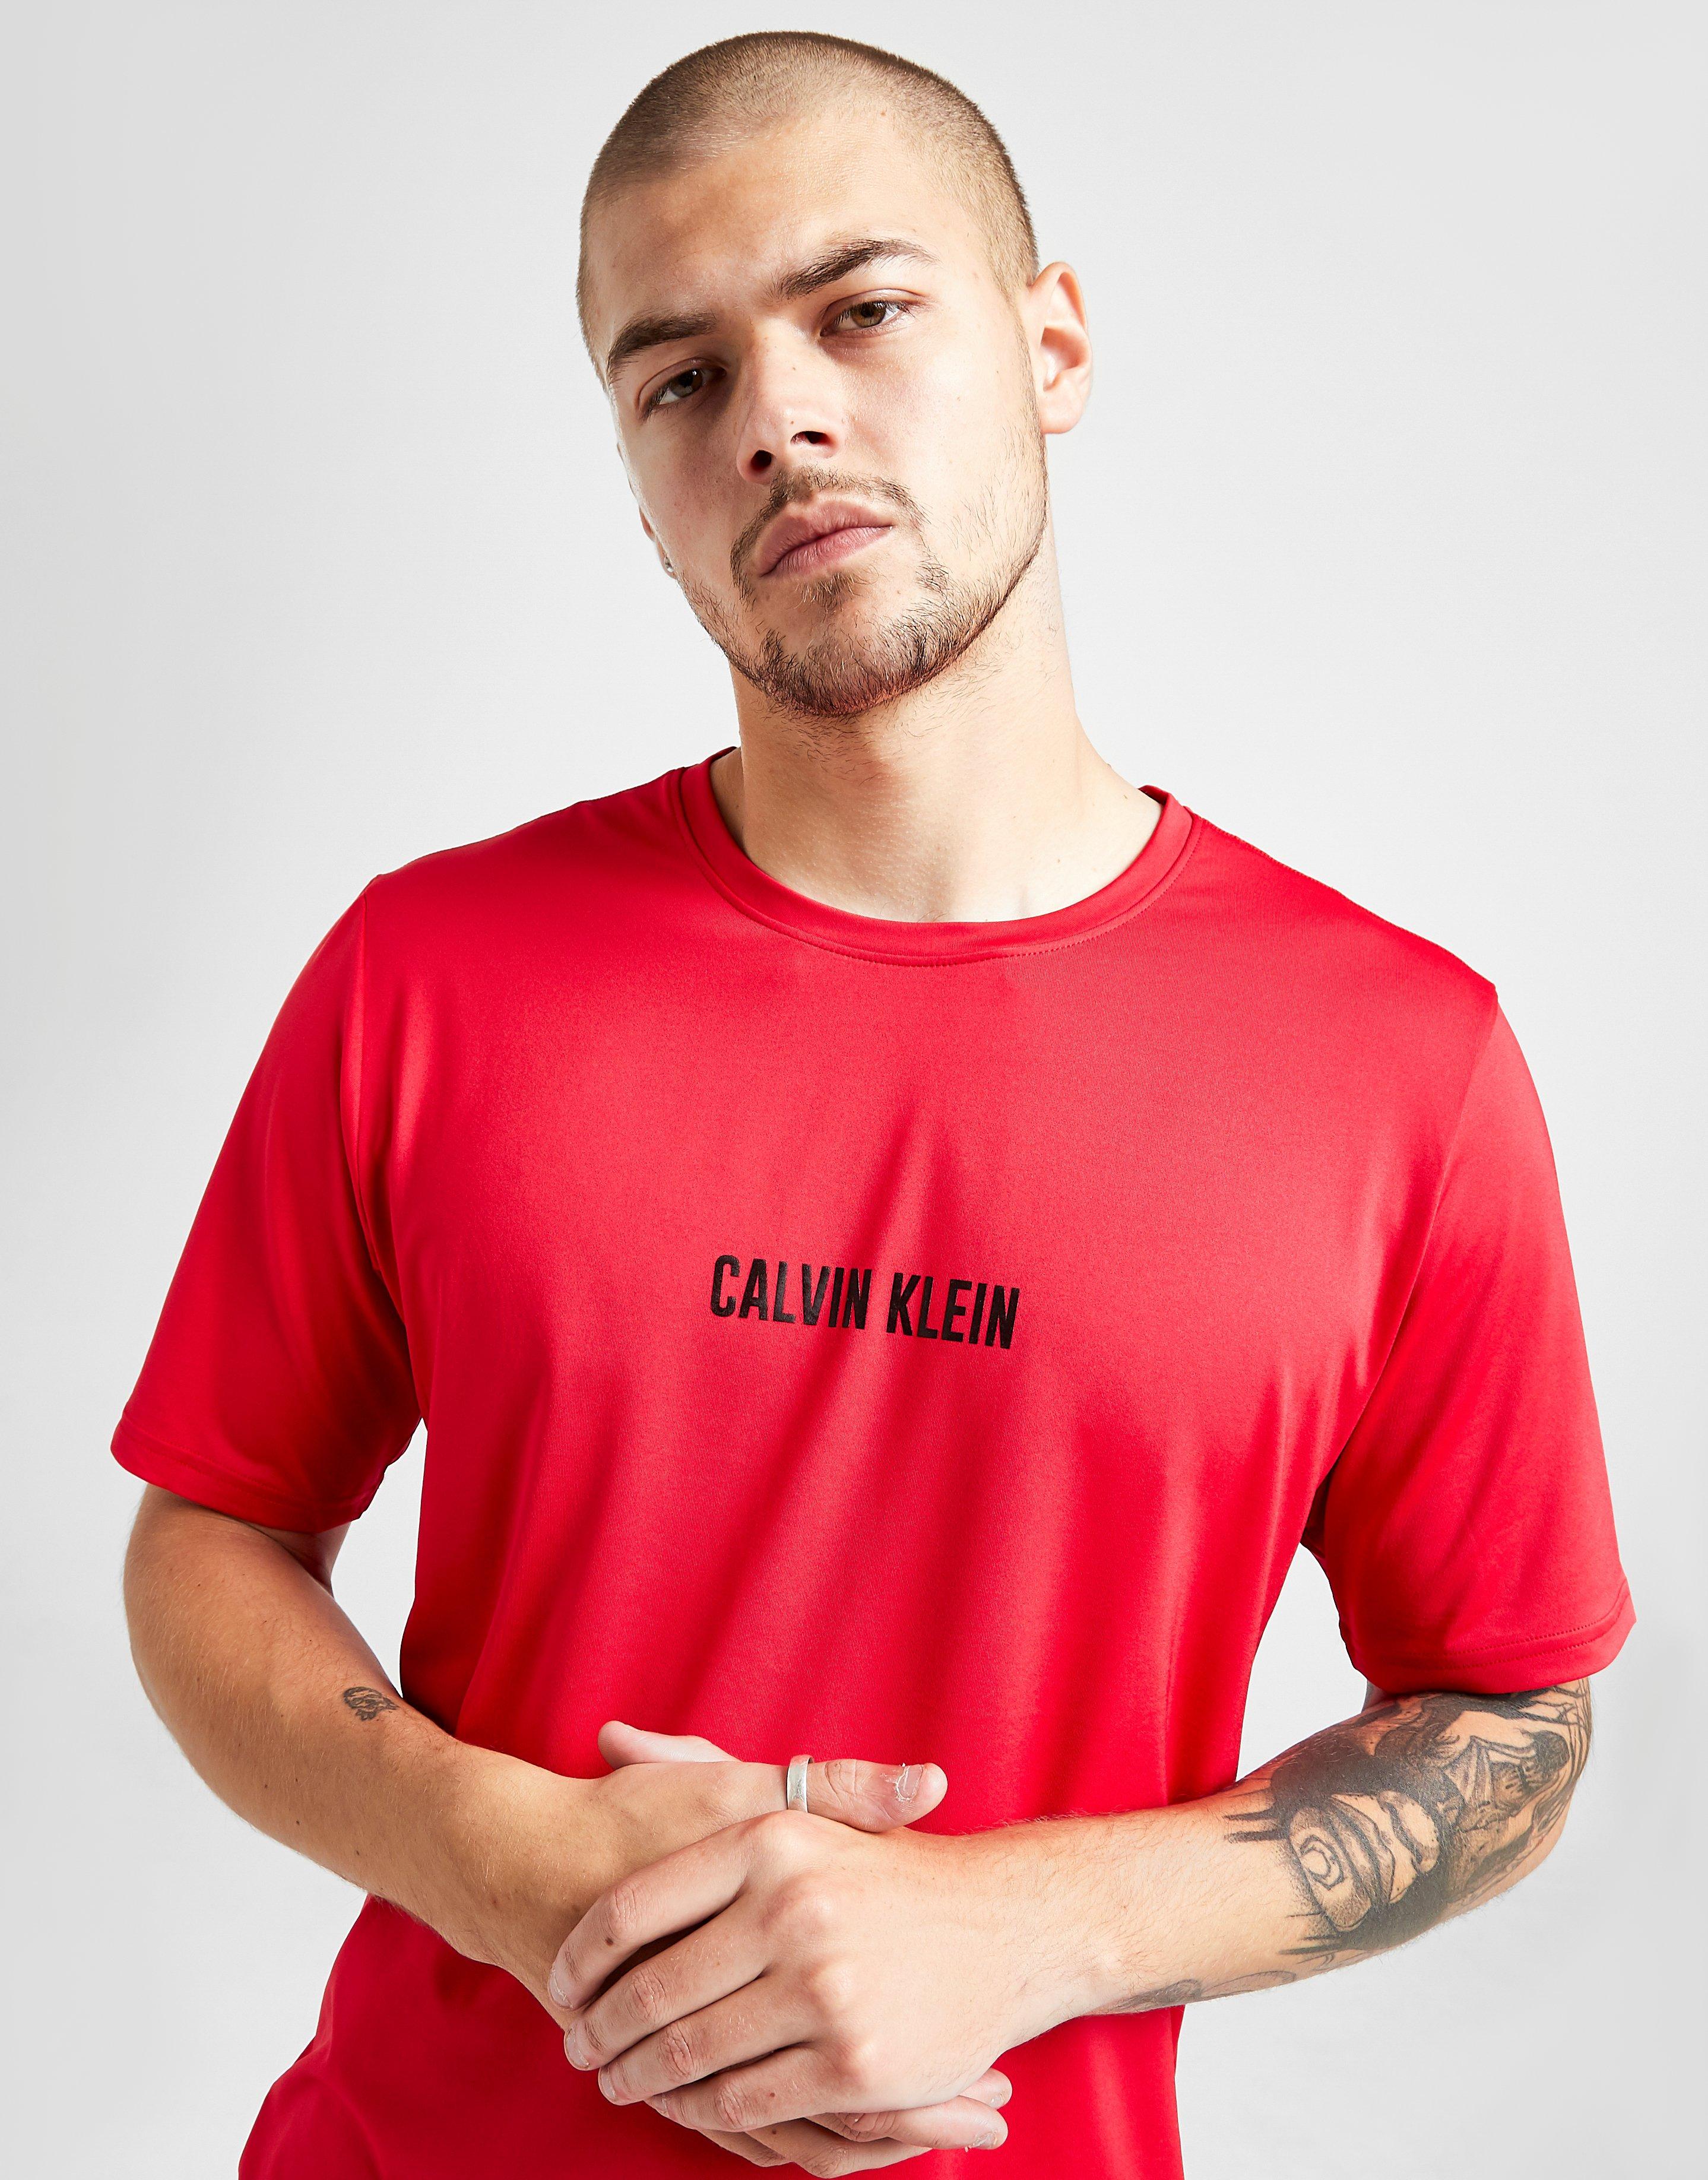 calvin klein red tshirt